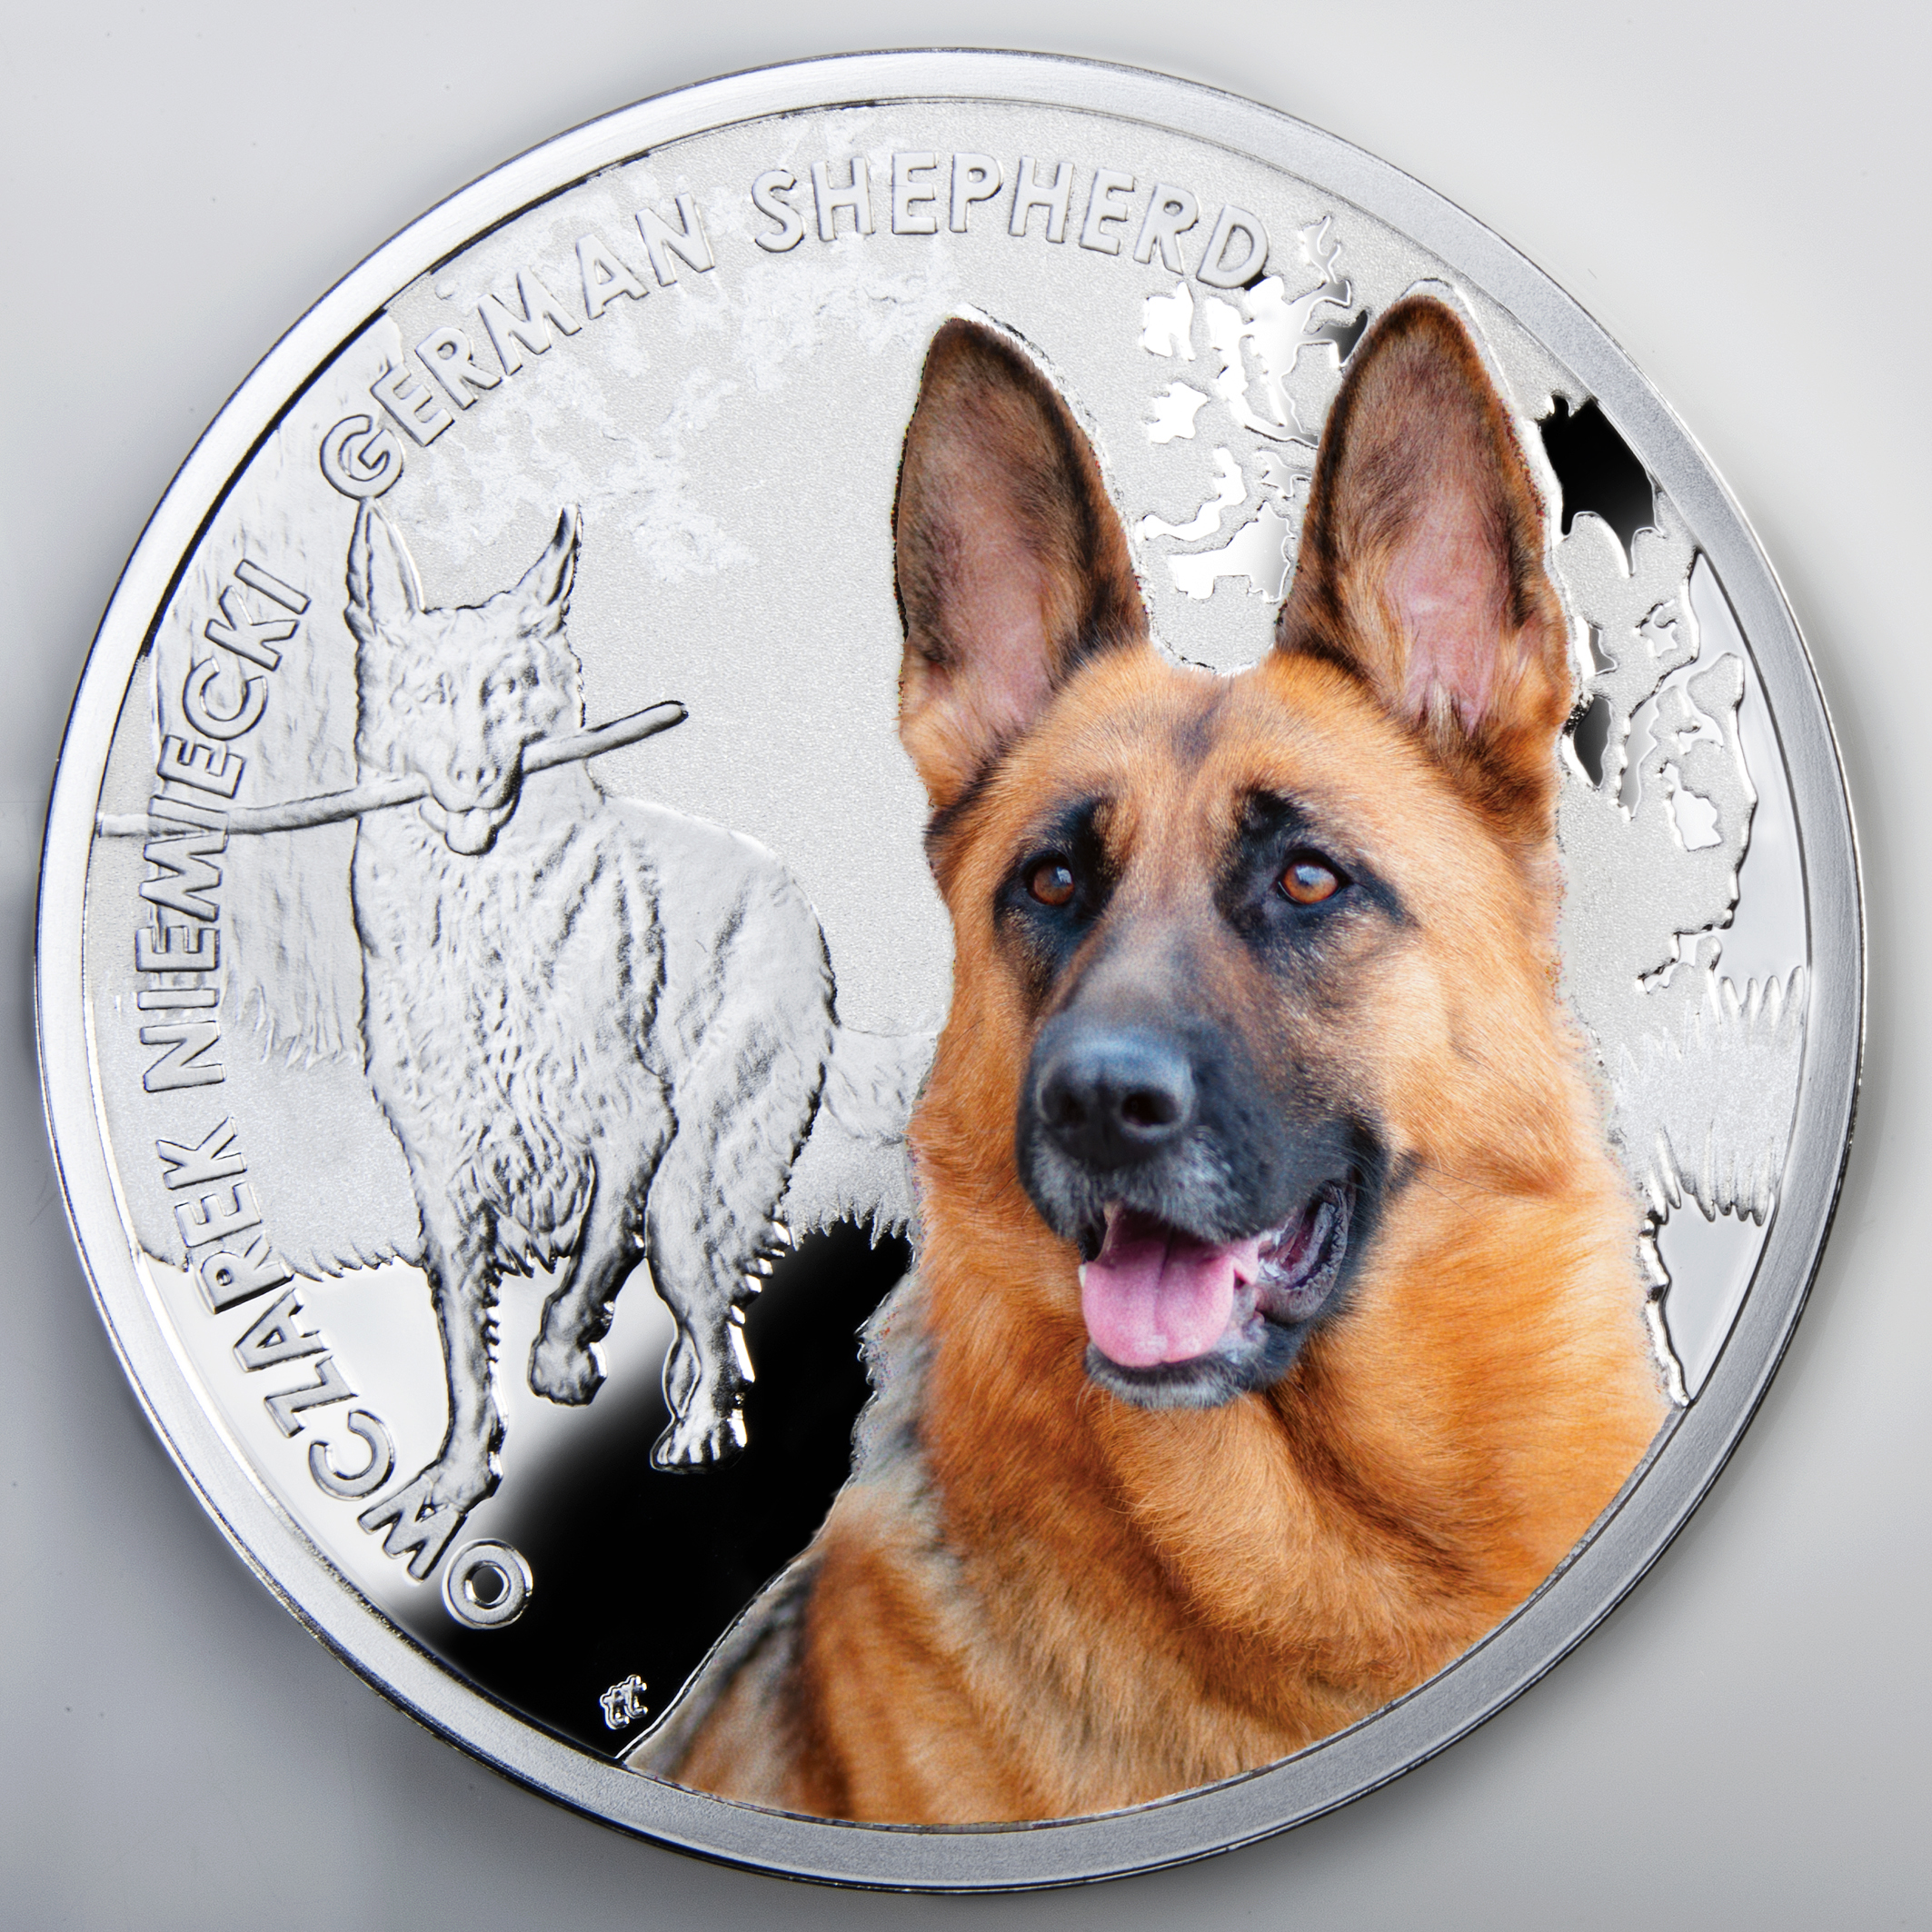 Bendog монета. Монета собака немецкая овчарка. Ниуэ 1 доллар, 2014 лучшие друзья человека - немецкая овчарка. Серебряная немецкая овчарка. Монета с собакой.